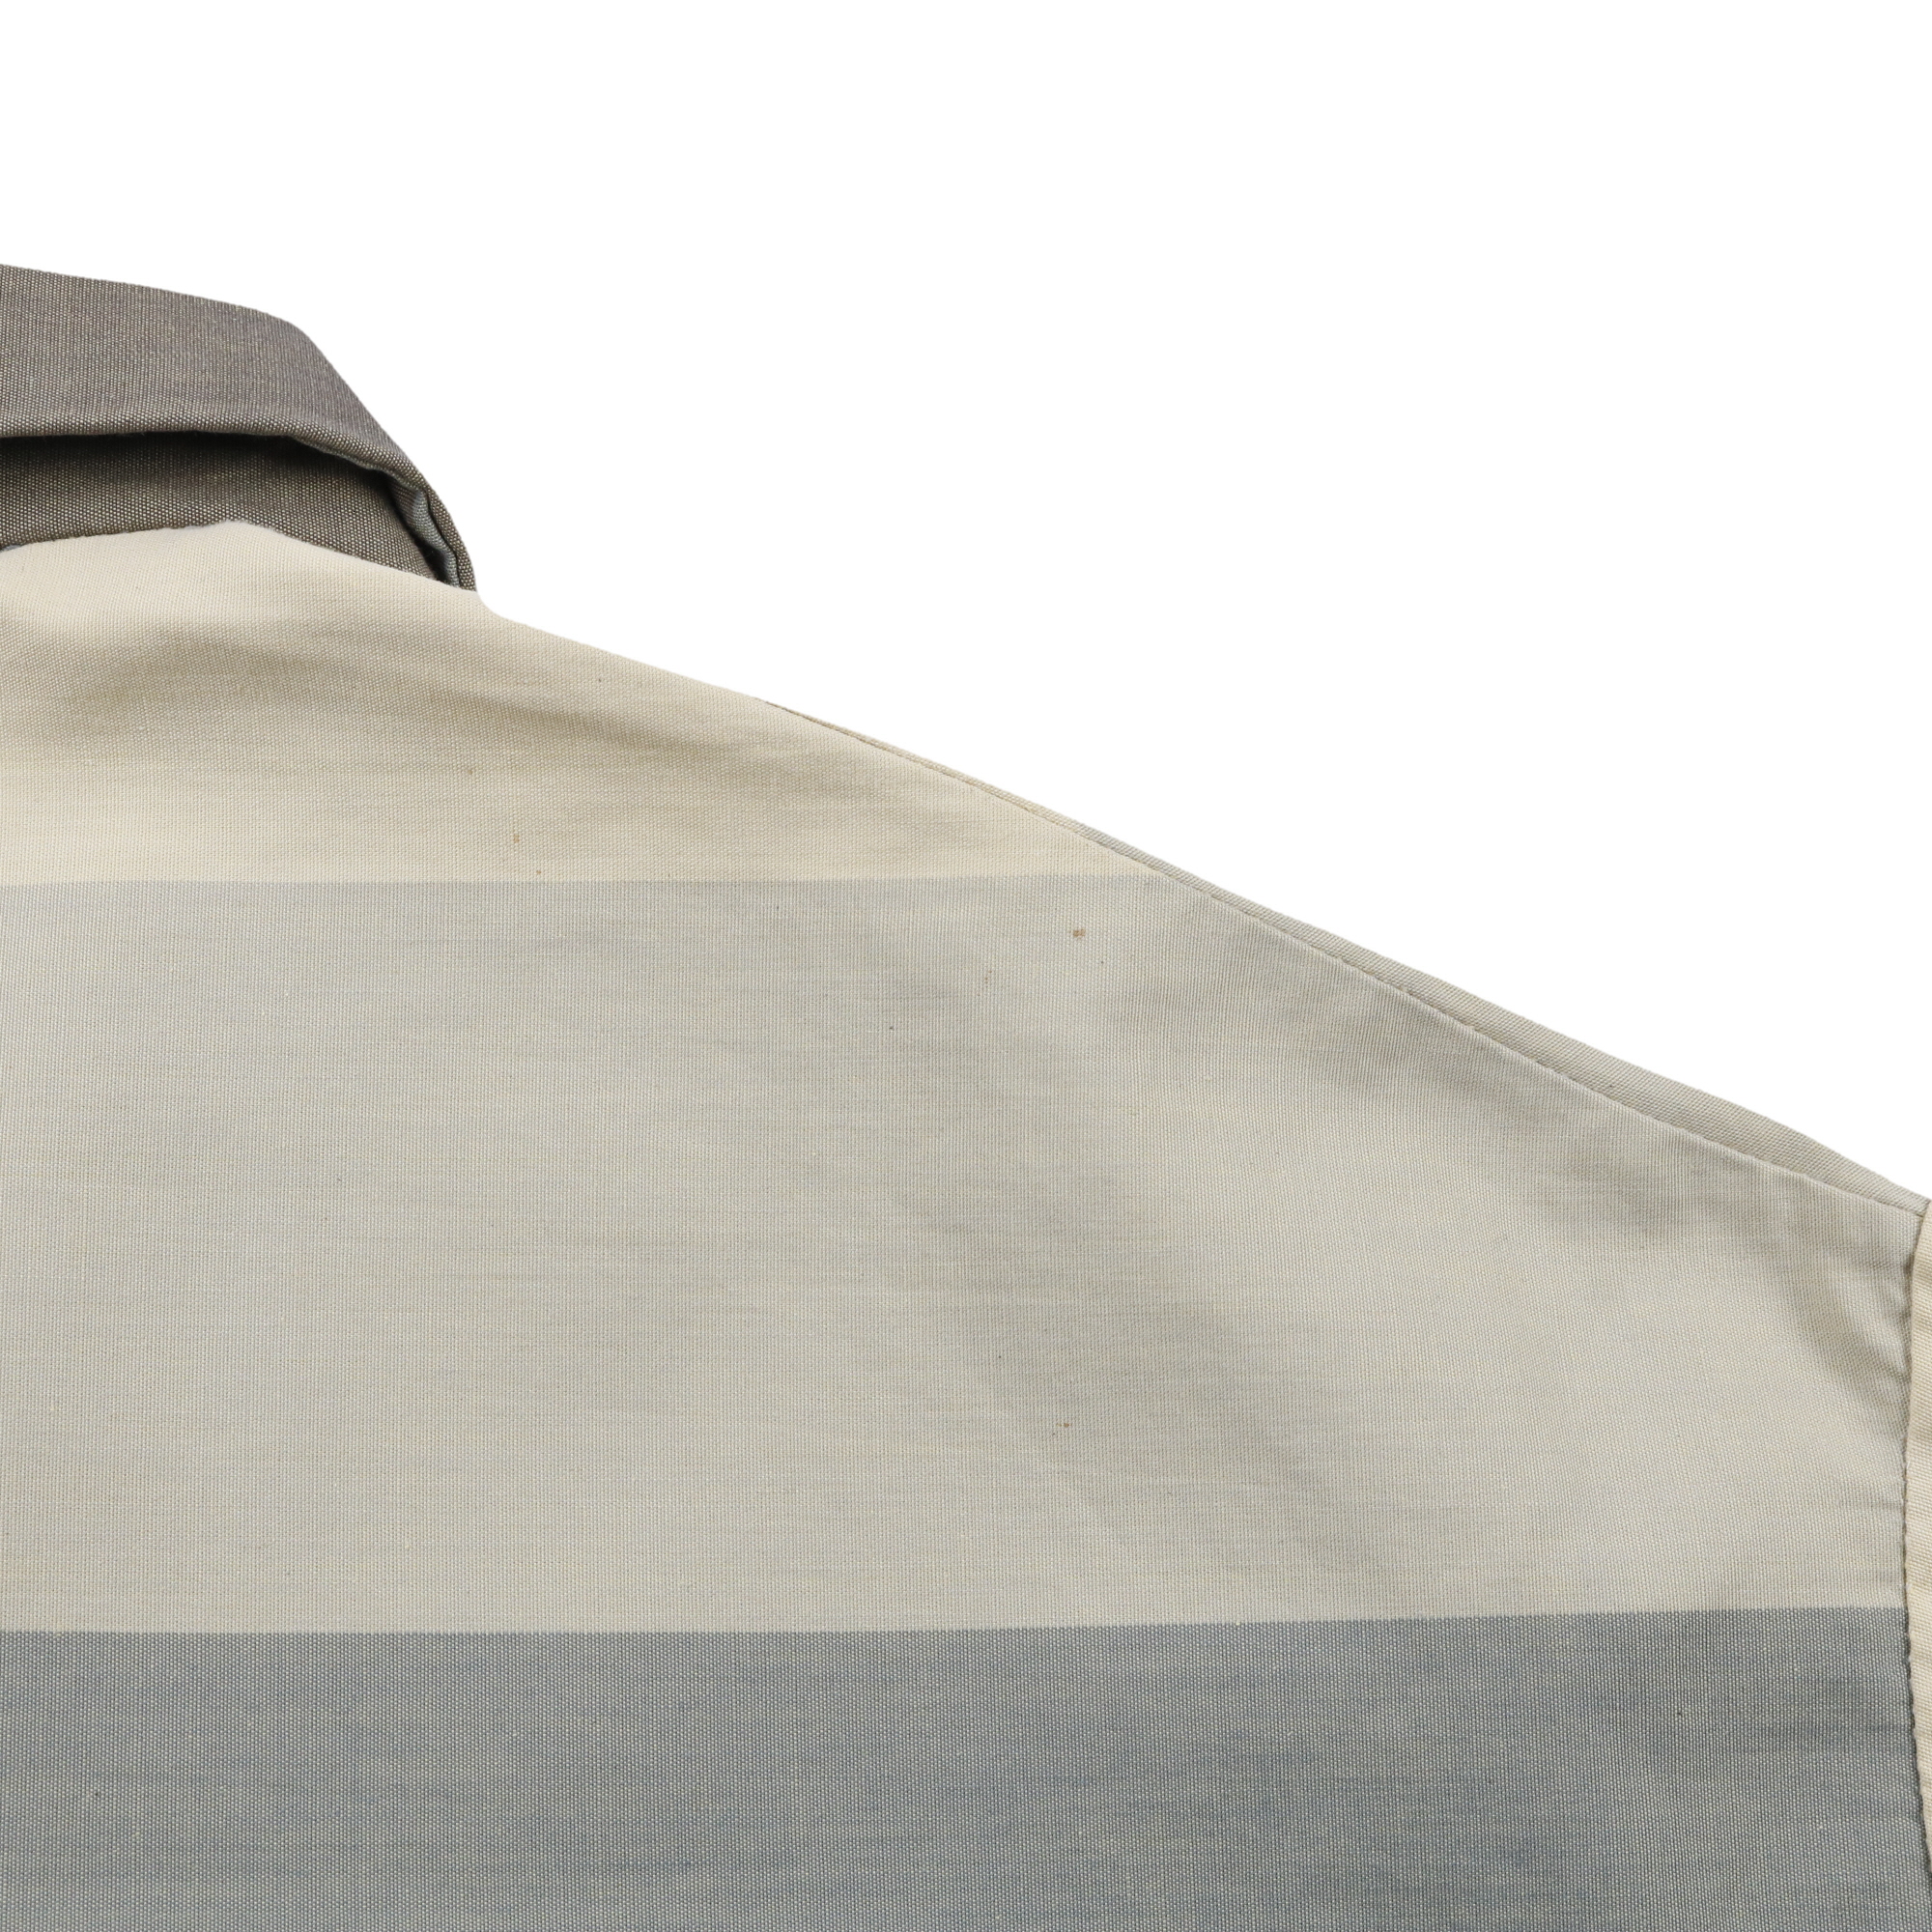 60 ヴィンテージ star スター プルオーバーシャツ イタリアンカラー 袋襟 玉虫生地 グレー ブルー L程